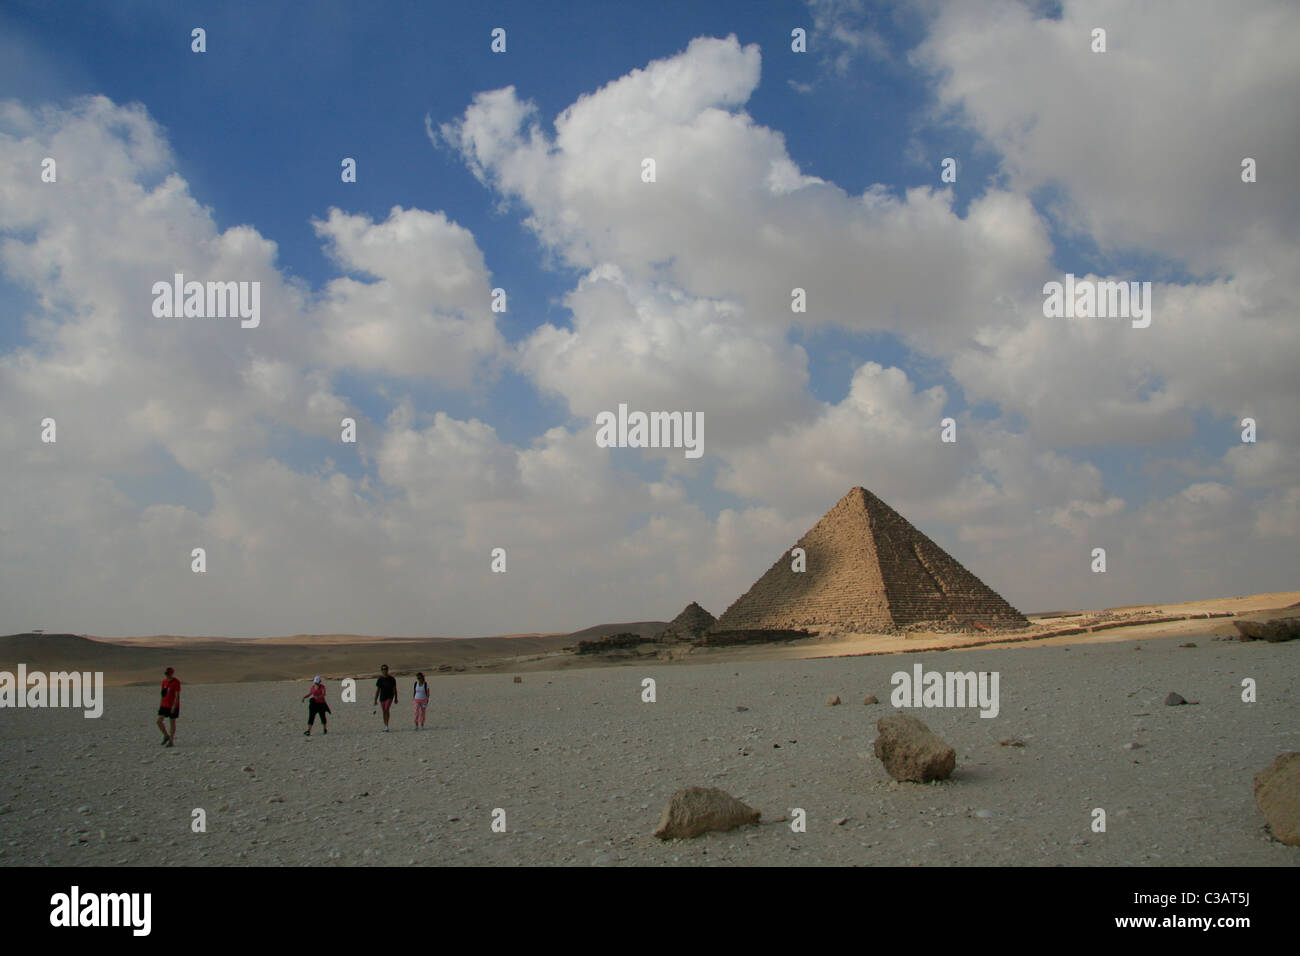 L'Menkaourê/Ripperblackstaff pyramide de Gizeh, Le Caire, Égypte. Banque D'Images